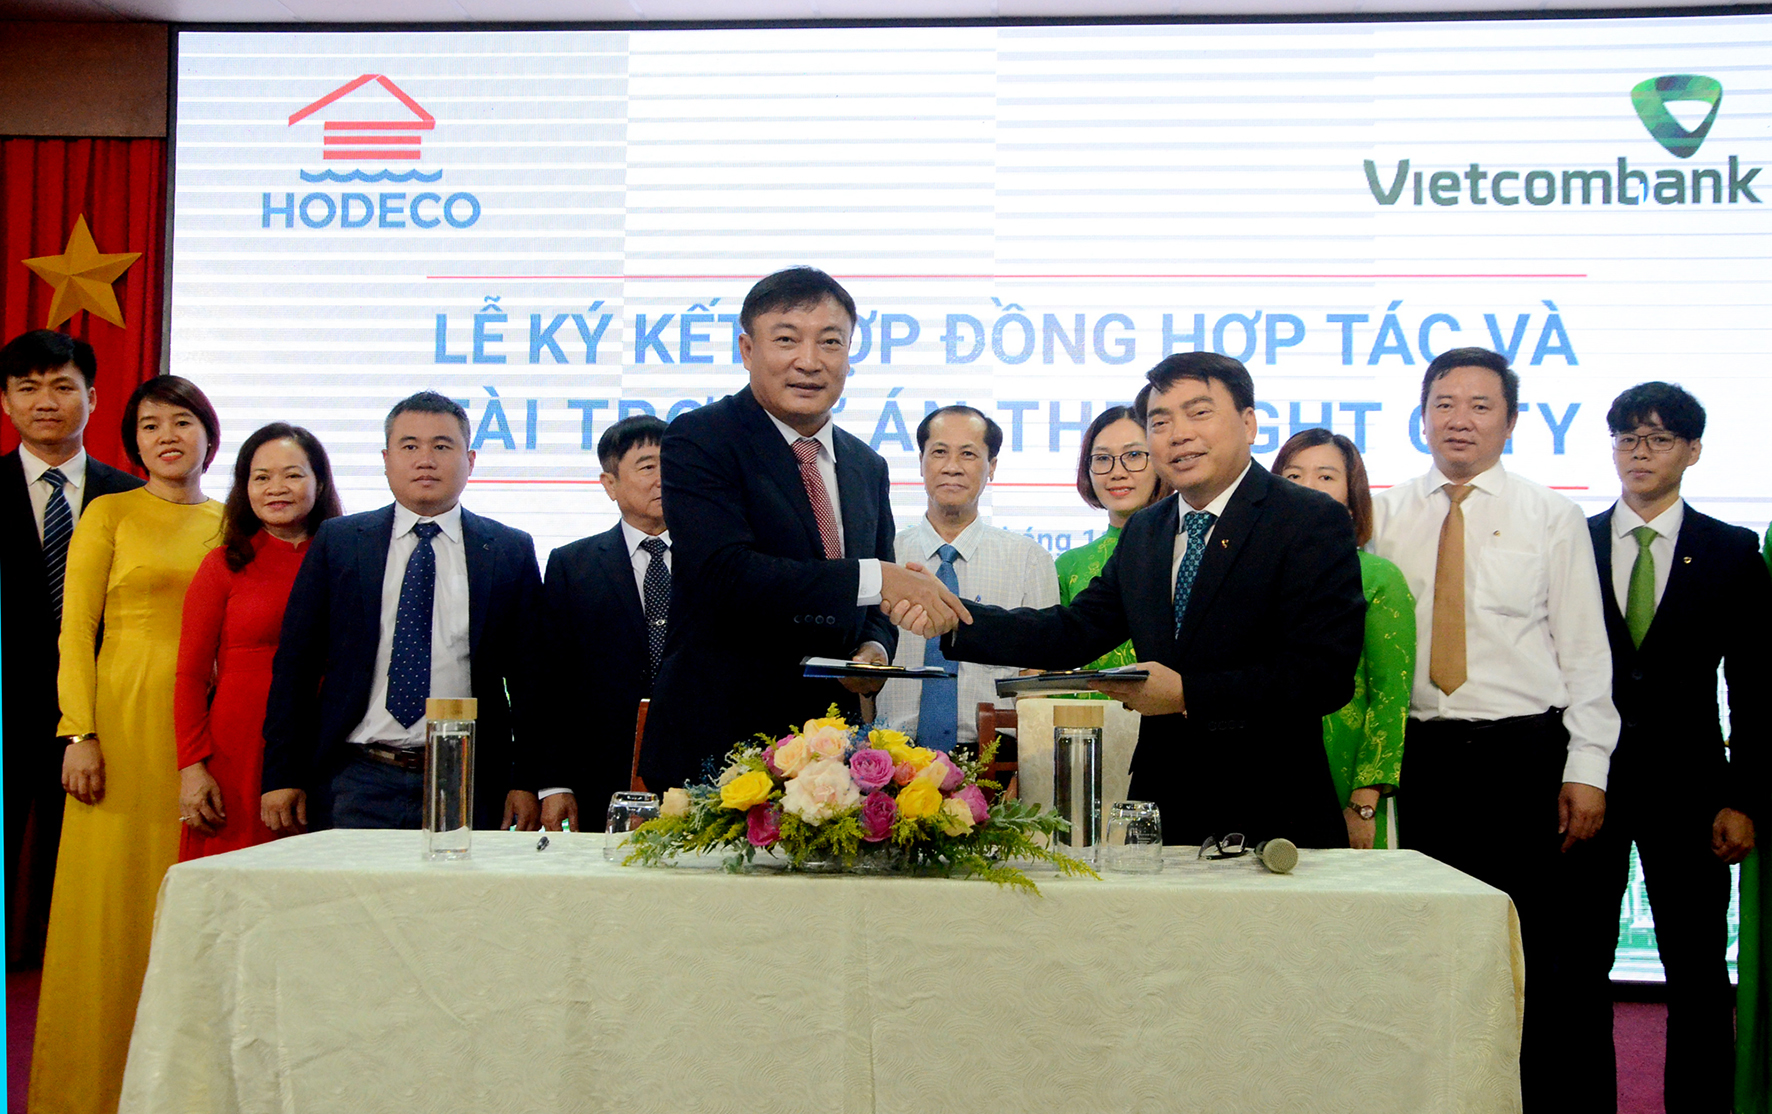 Ông Lê Viết Liên, Tổng Giám đốc Hodeco và ông Đoàn Văn Tuyến, Giám đốc Vietcombank Chi nhánh Vũng Tàu ký kết hợp đồng hợp tác và tài trợ dự án The Light City.